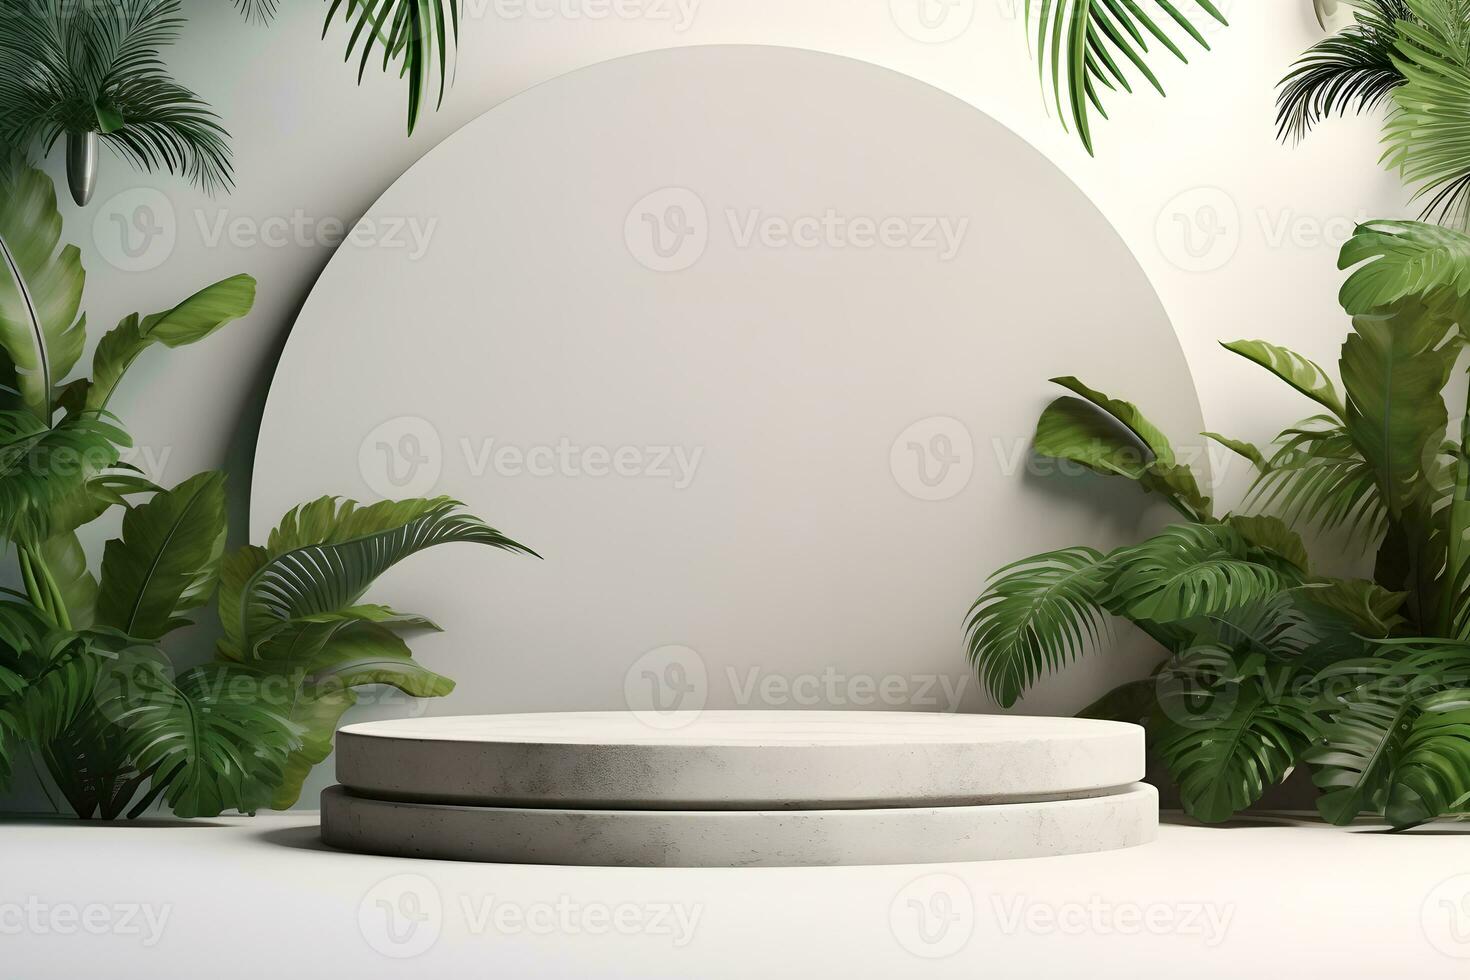 3d sten podium plattform i tropisk växter dekoration, för presentation visa kosmetika Produkter varumärke, tömma minimal skede identitet och förpackning design, ai generera foto